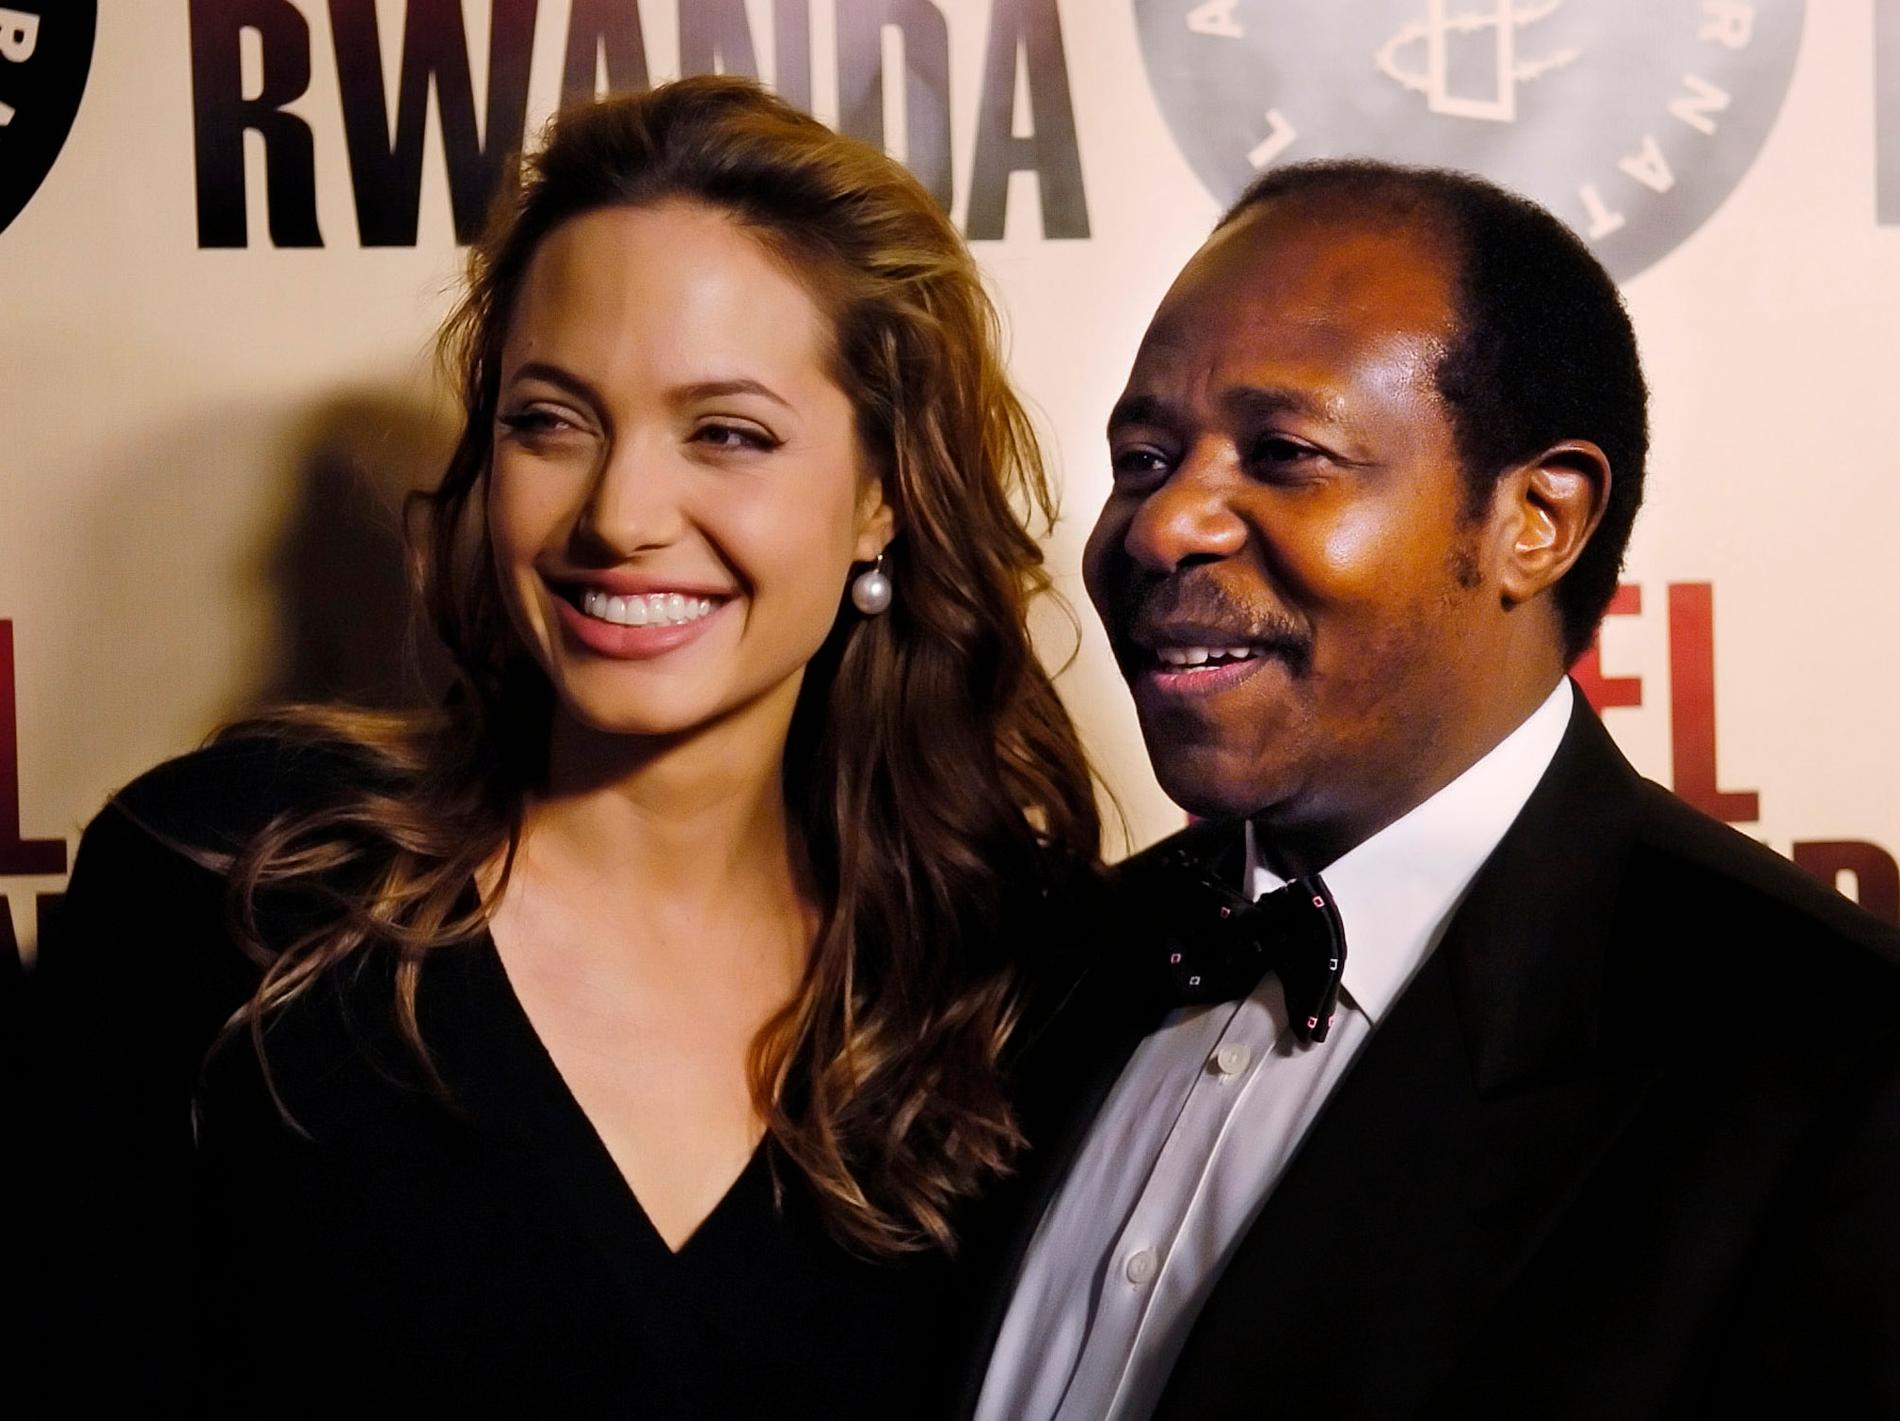 Paul Rusesabagina tillsammans med Hollywoodstjärnan Angelina Jolie på premiären av ”Hotel Rwanda”. 